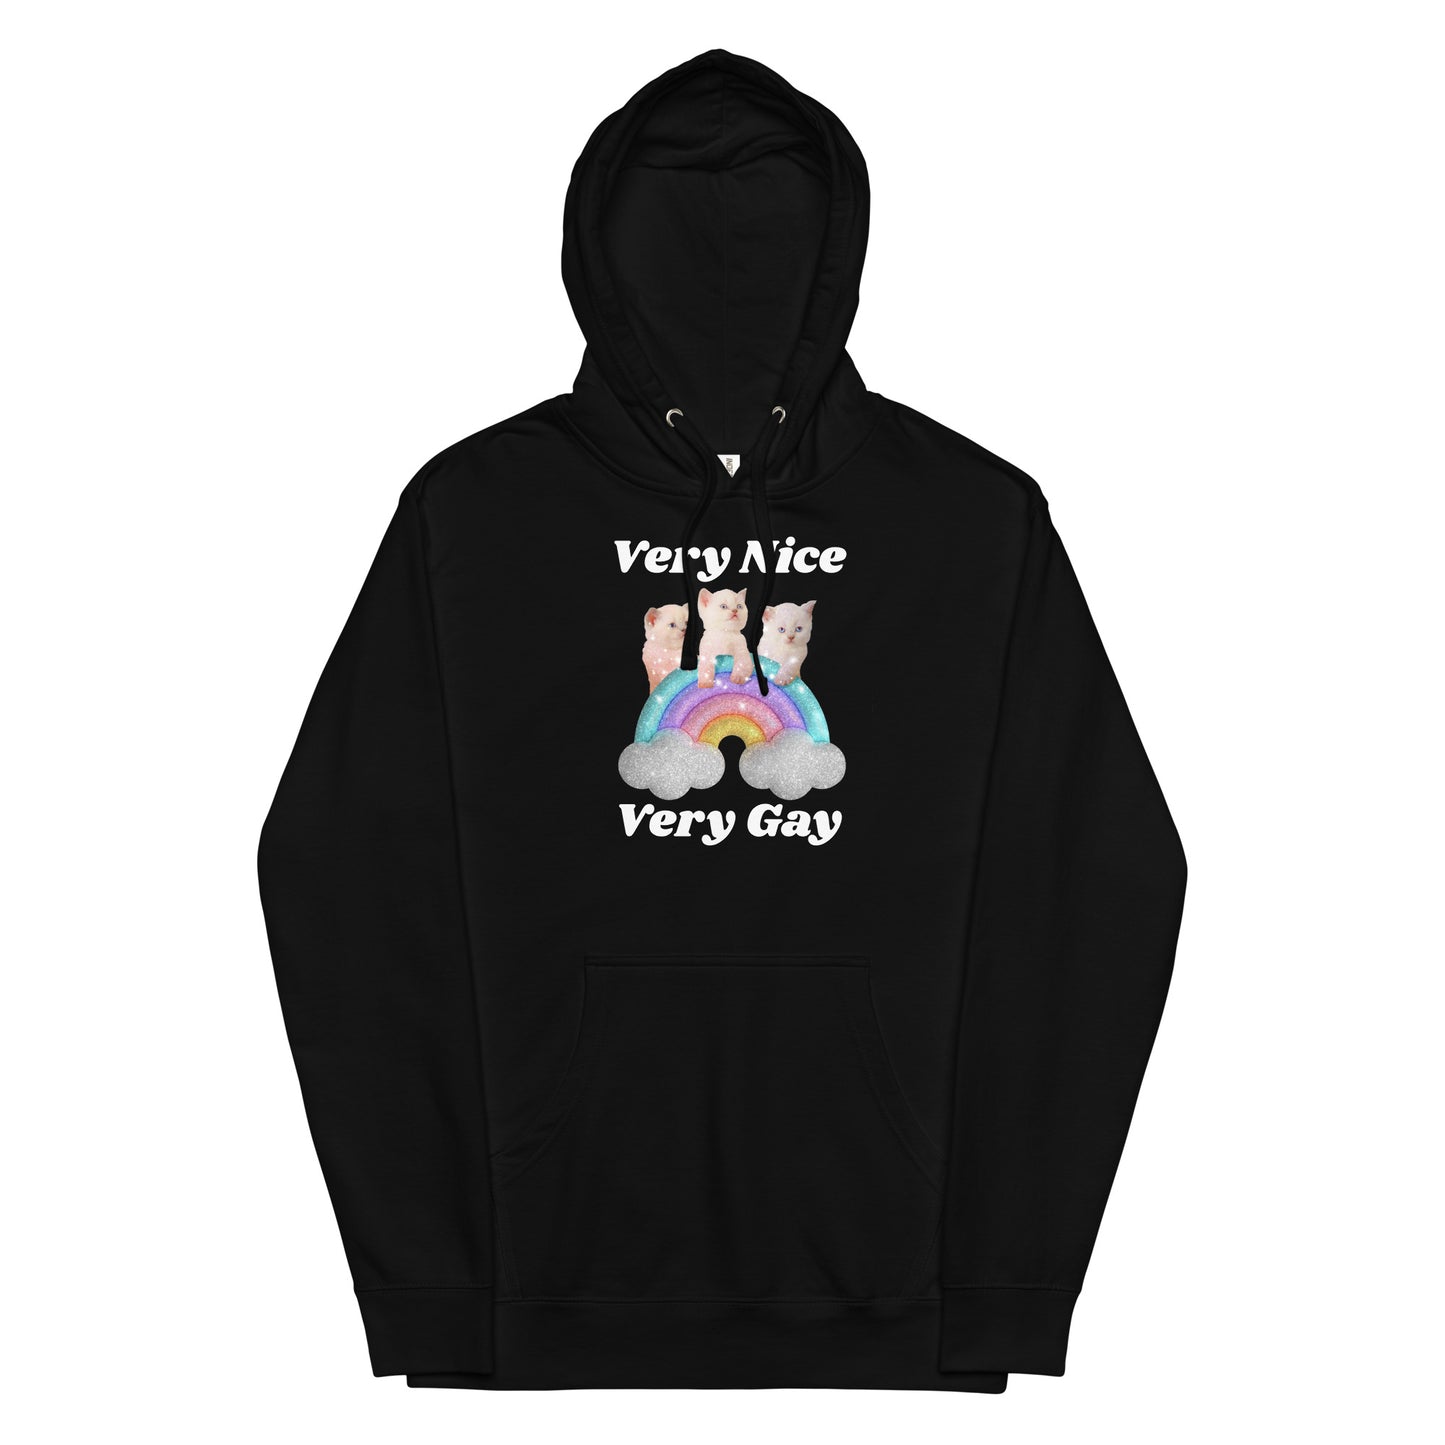 Very Nice Very Gay Unisex hoodie